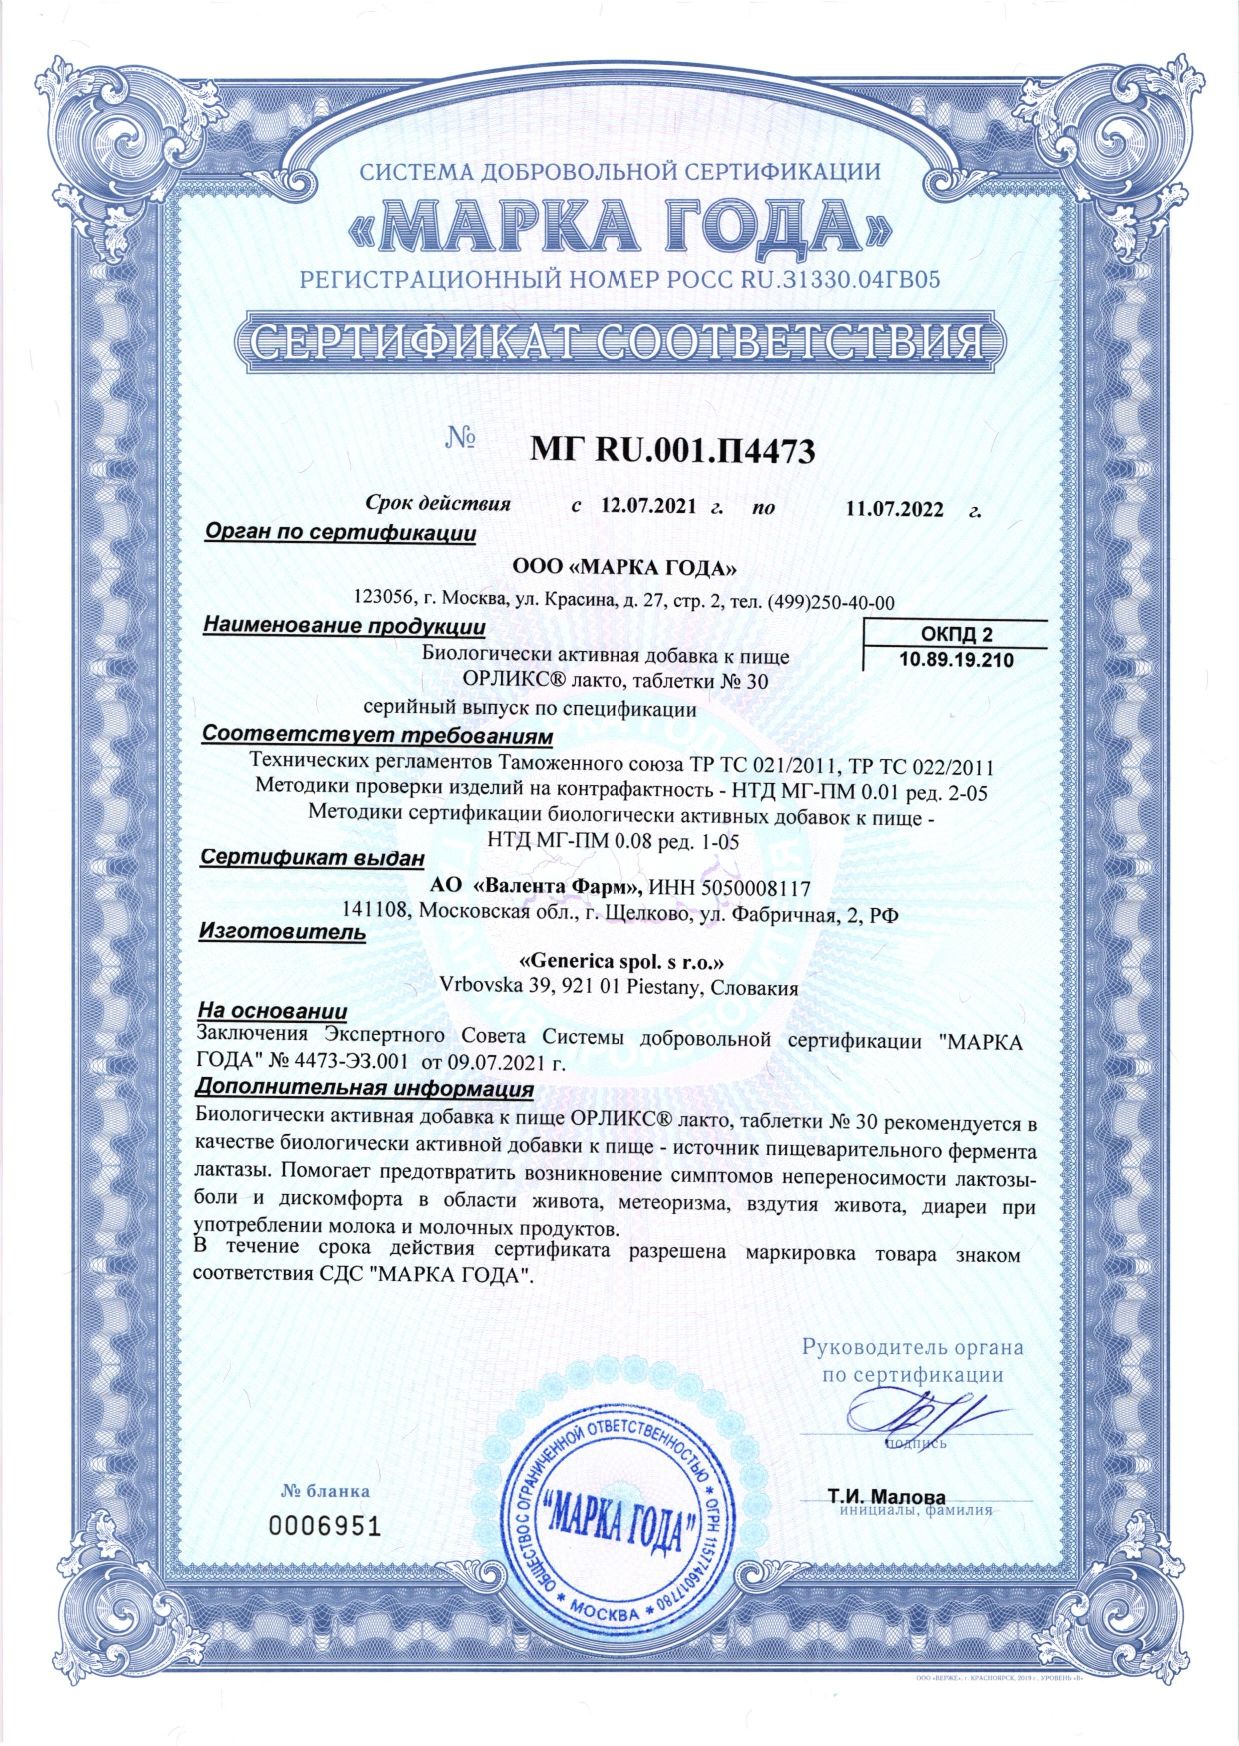 Орликс лакто сертификат